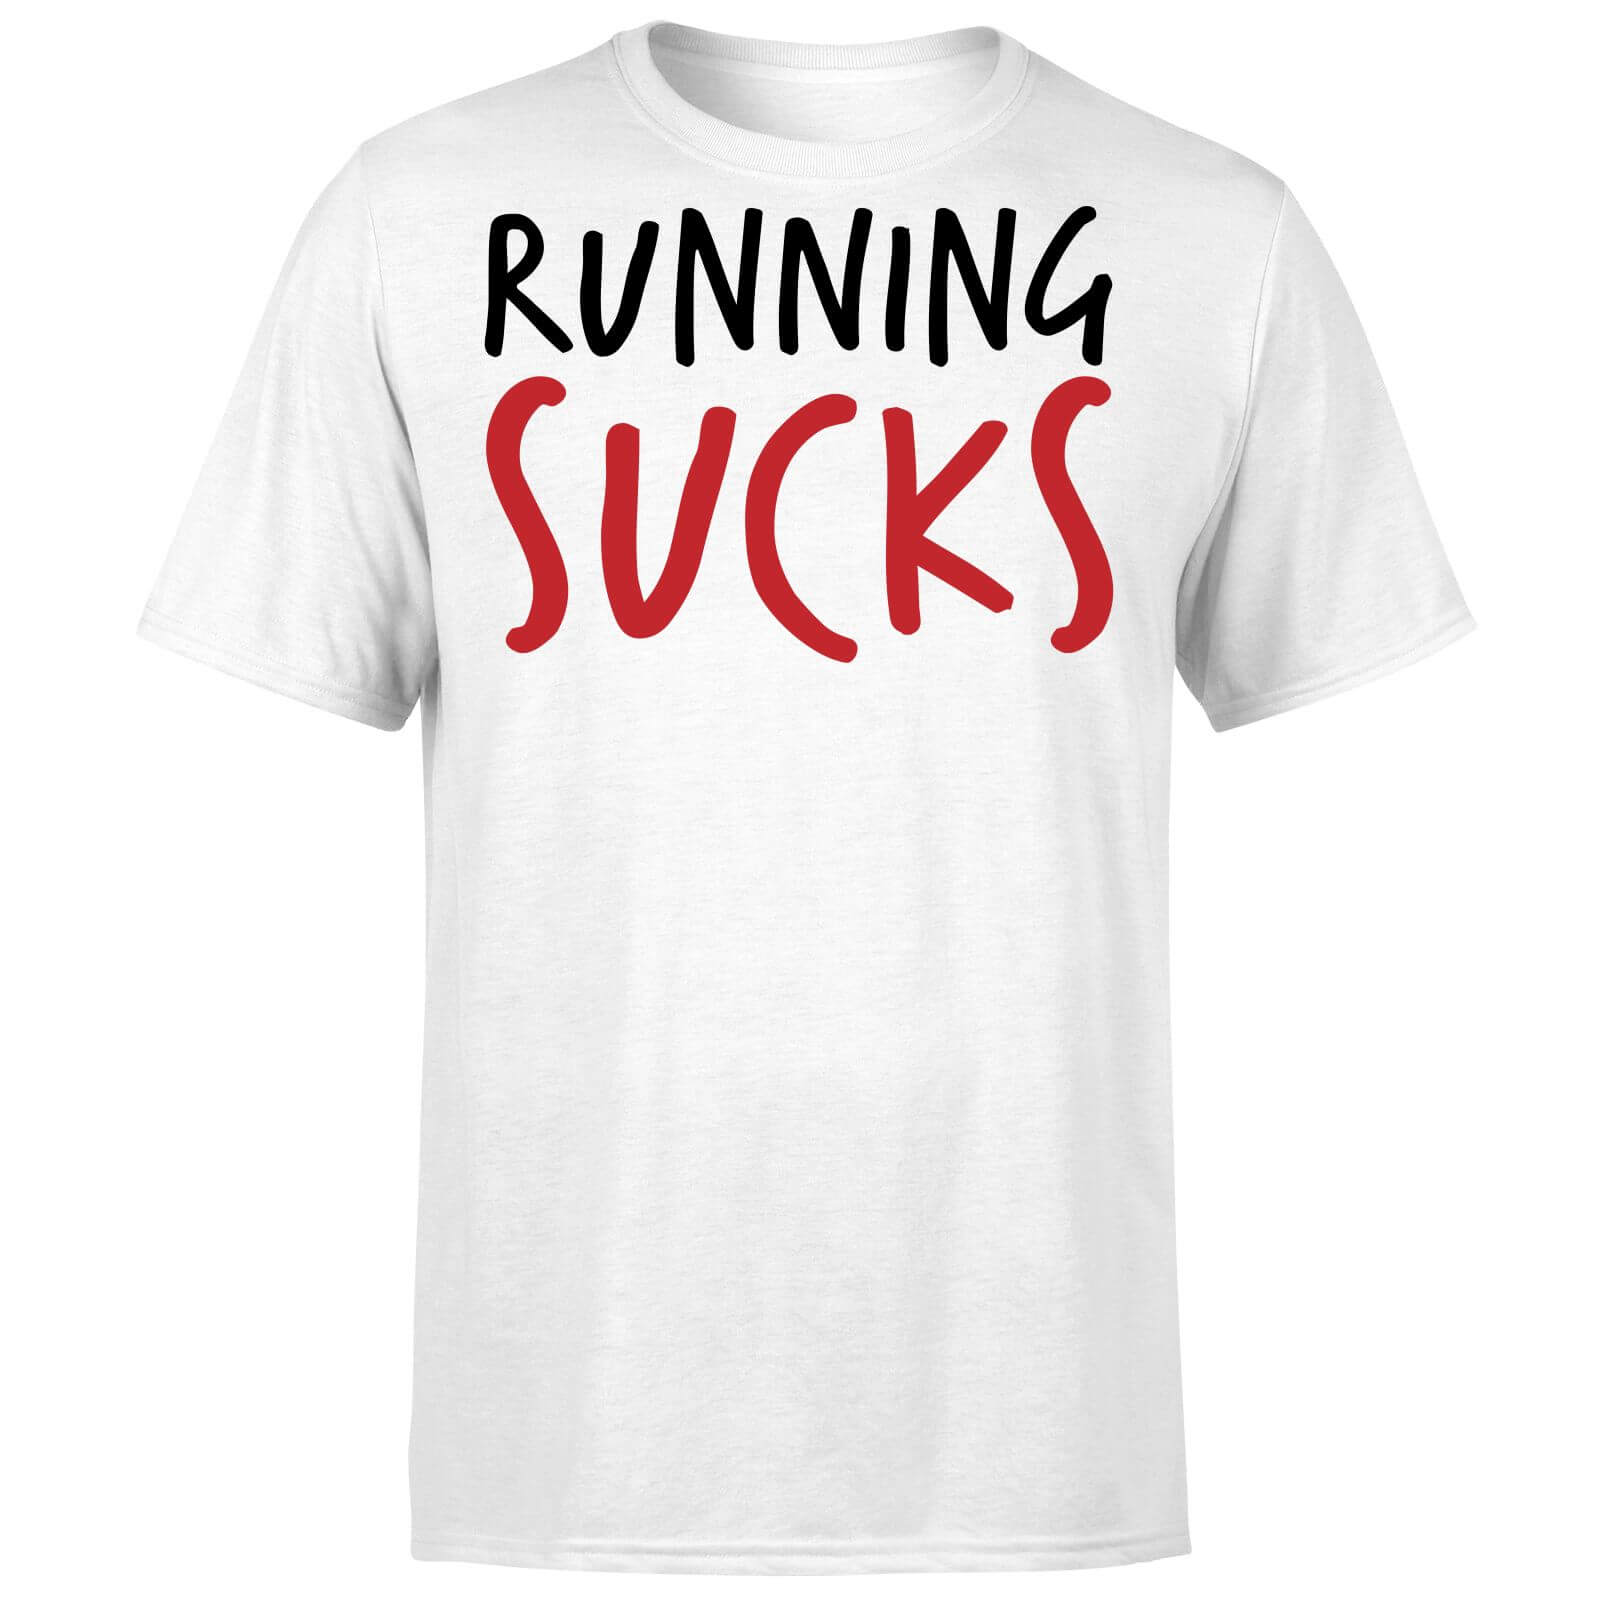 Running Sucks T-Shirt - White - XL - White